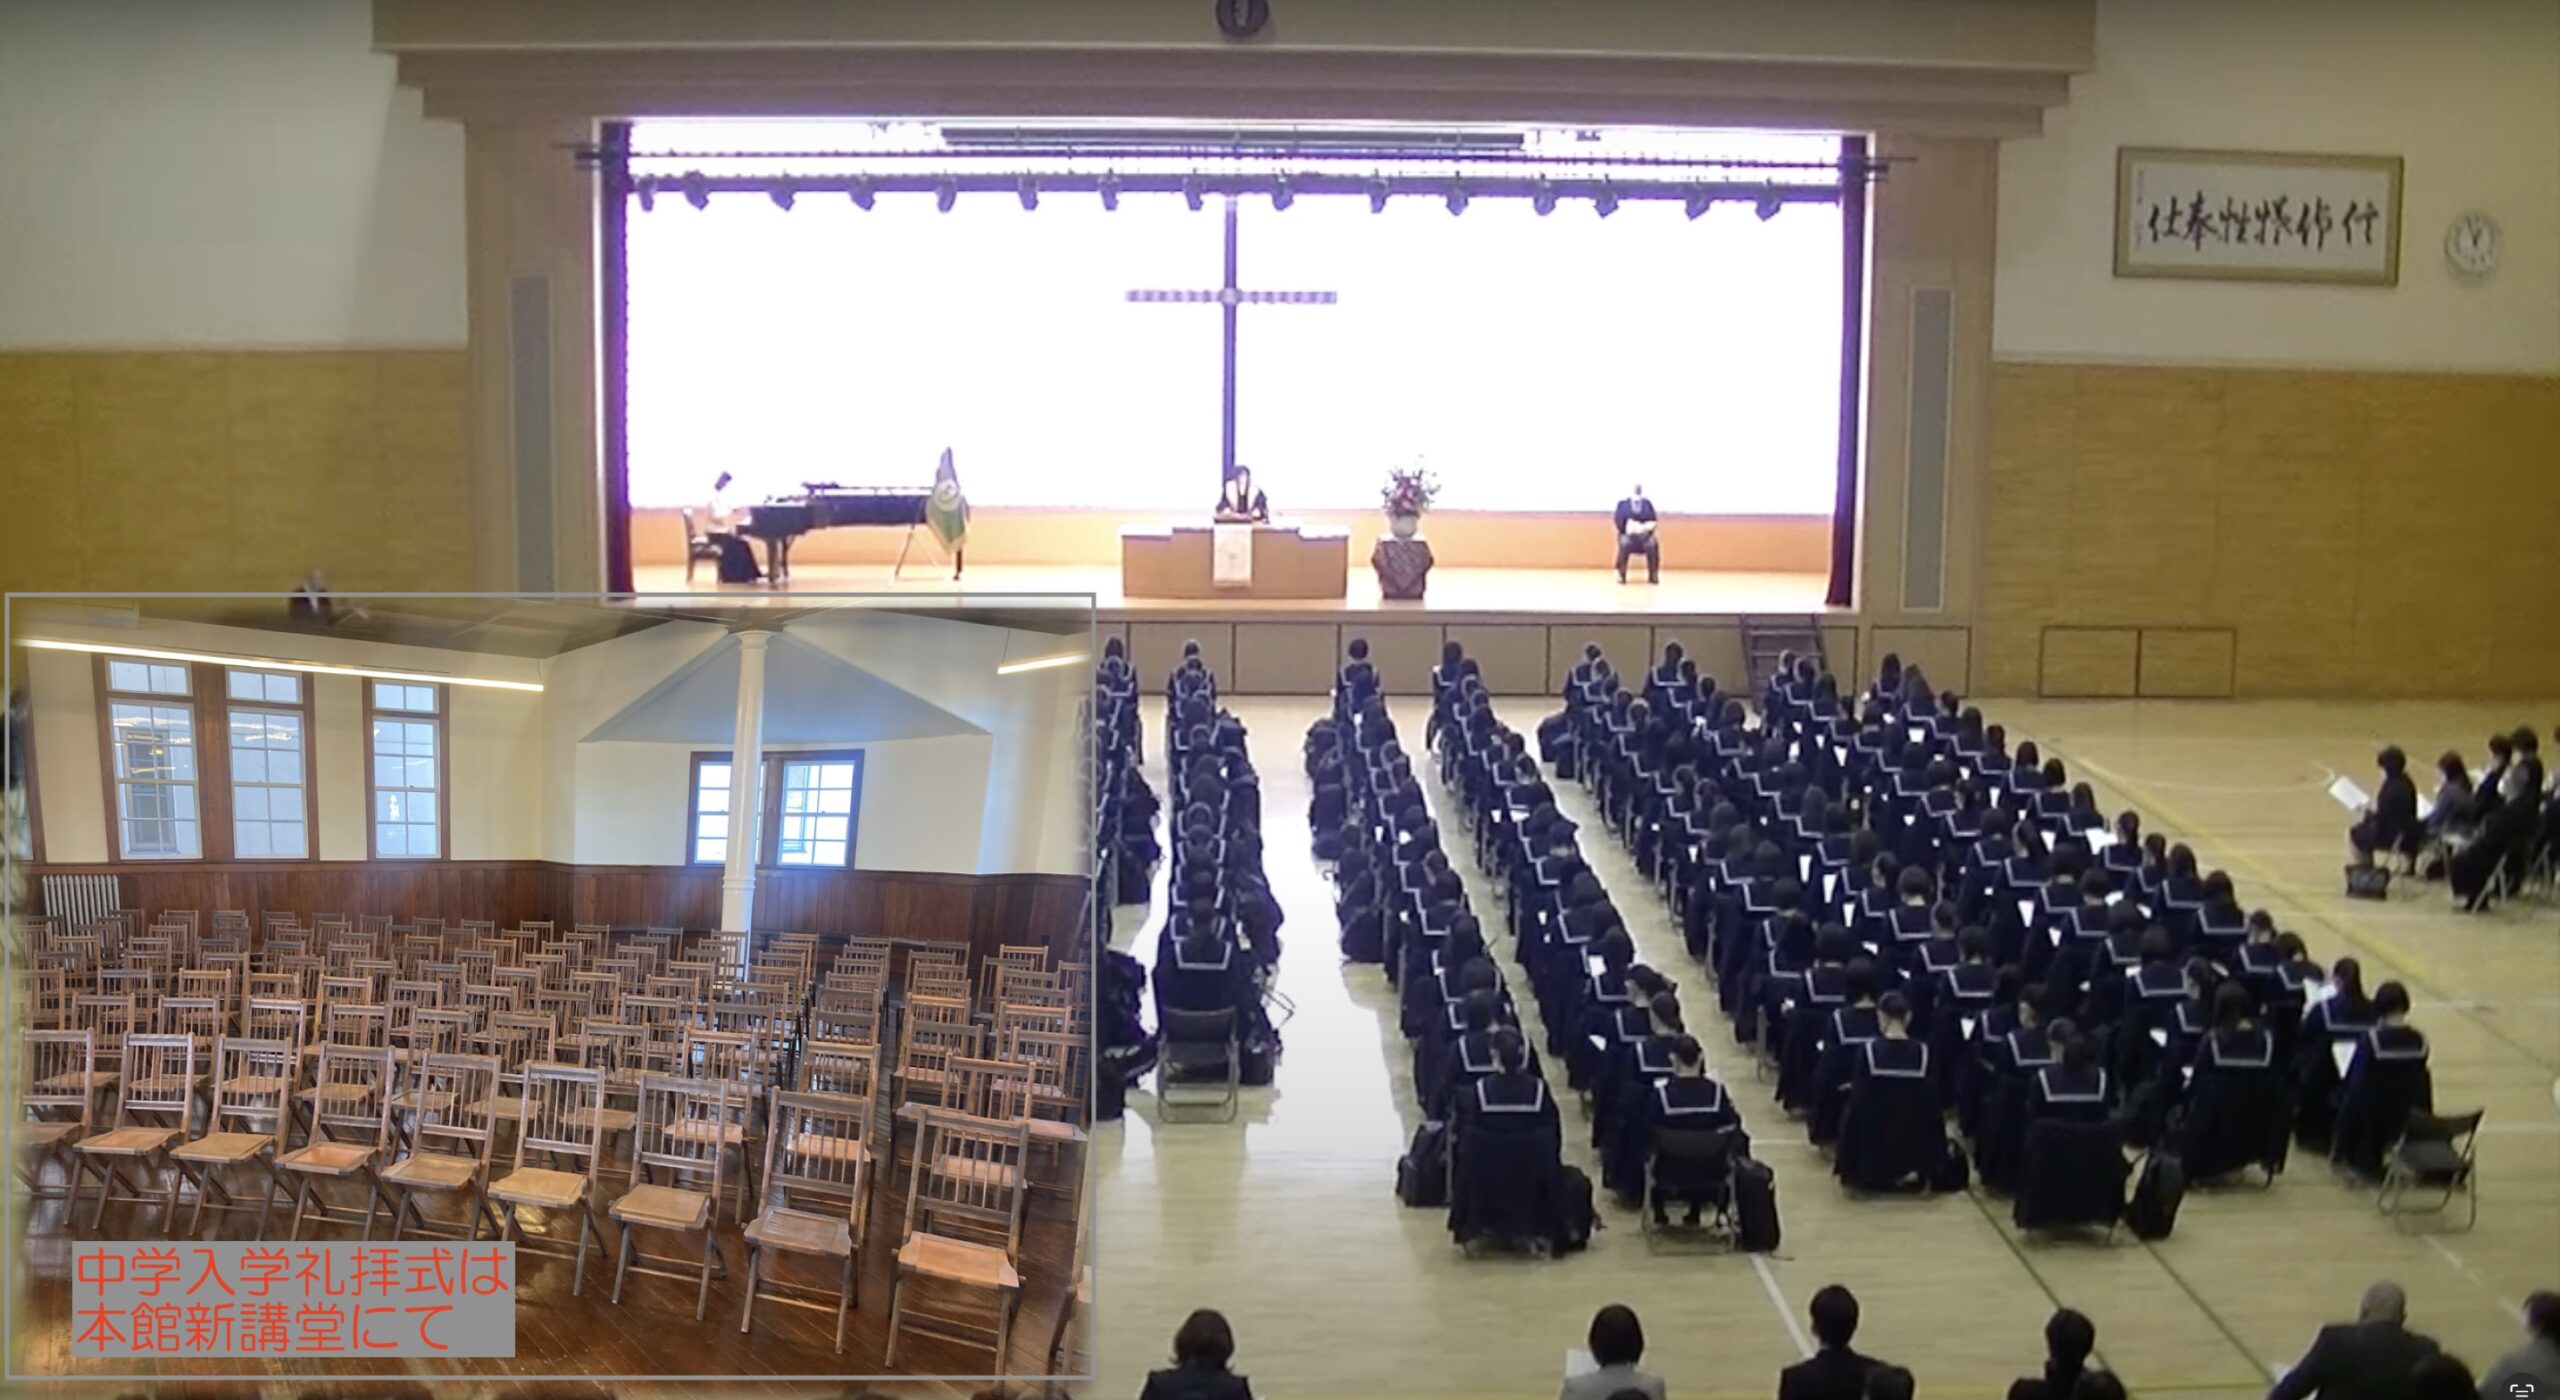 4月6日(土)遺愛女子中学・高等学校『入学礼拝式』が挙行されます。